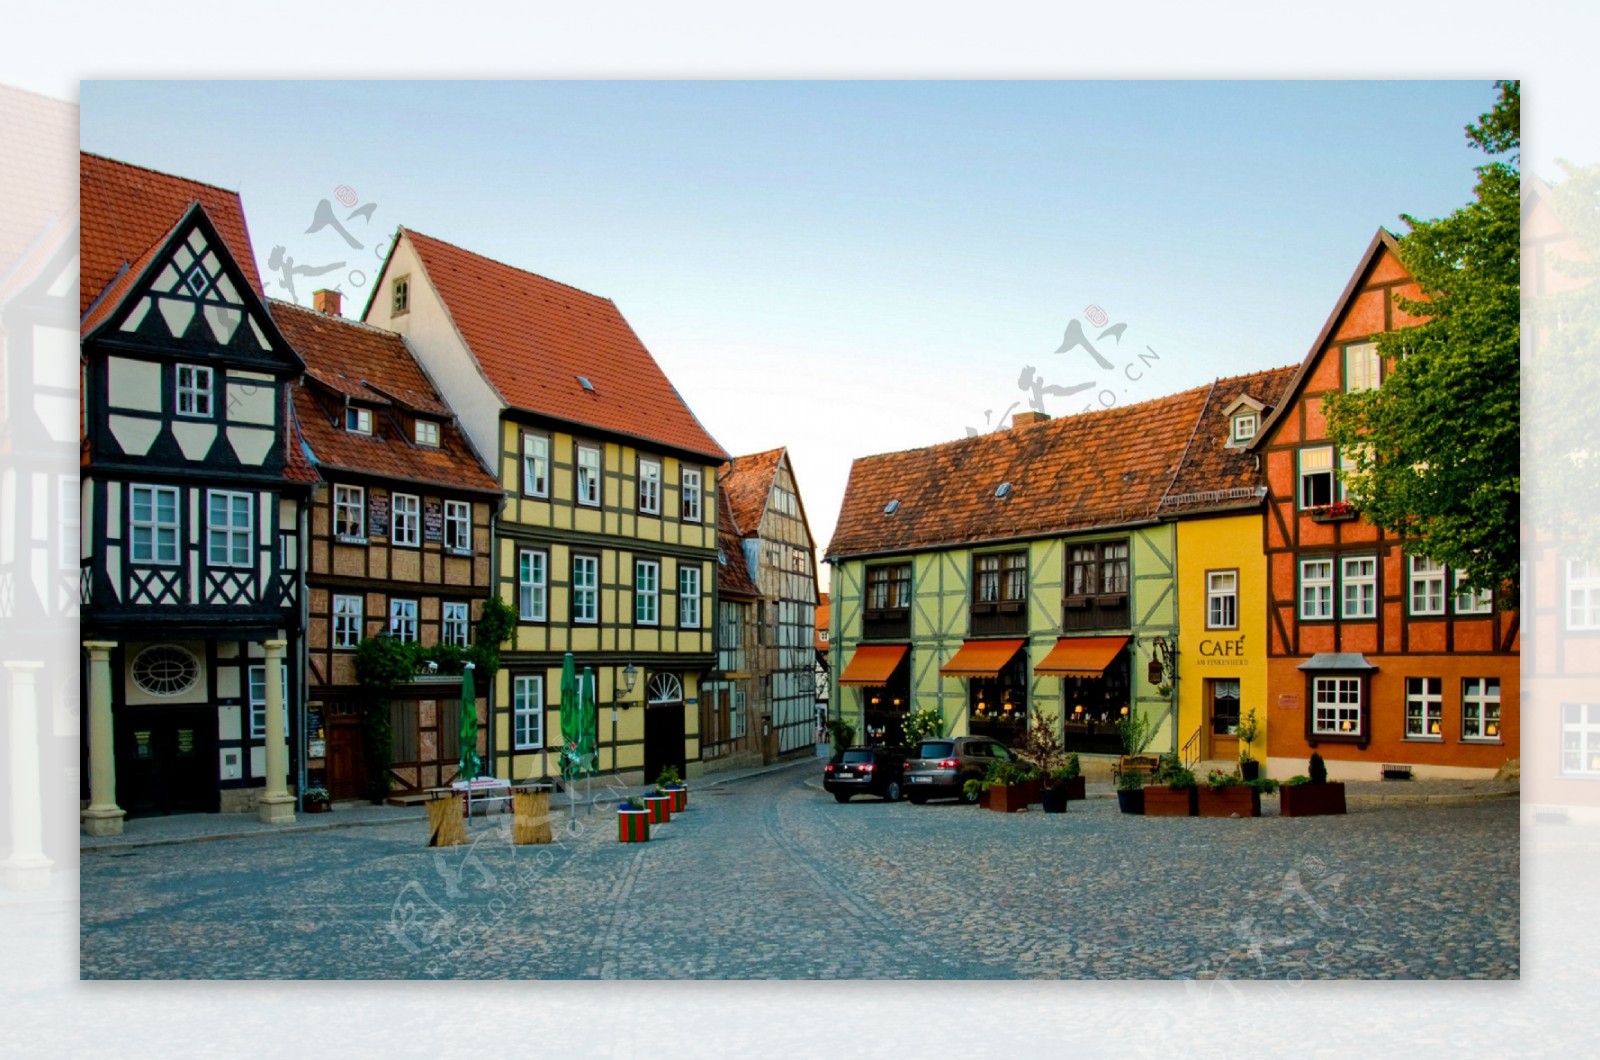 德国小镇街景图片